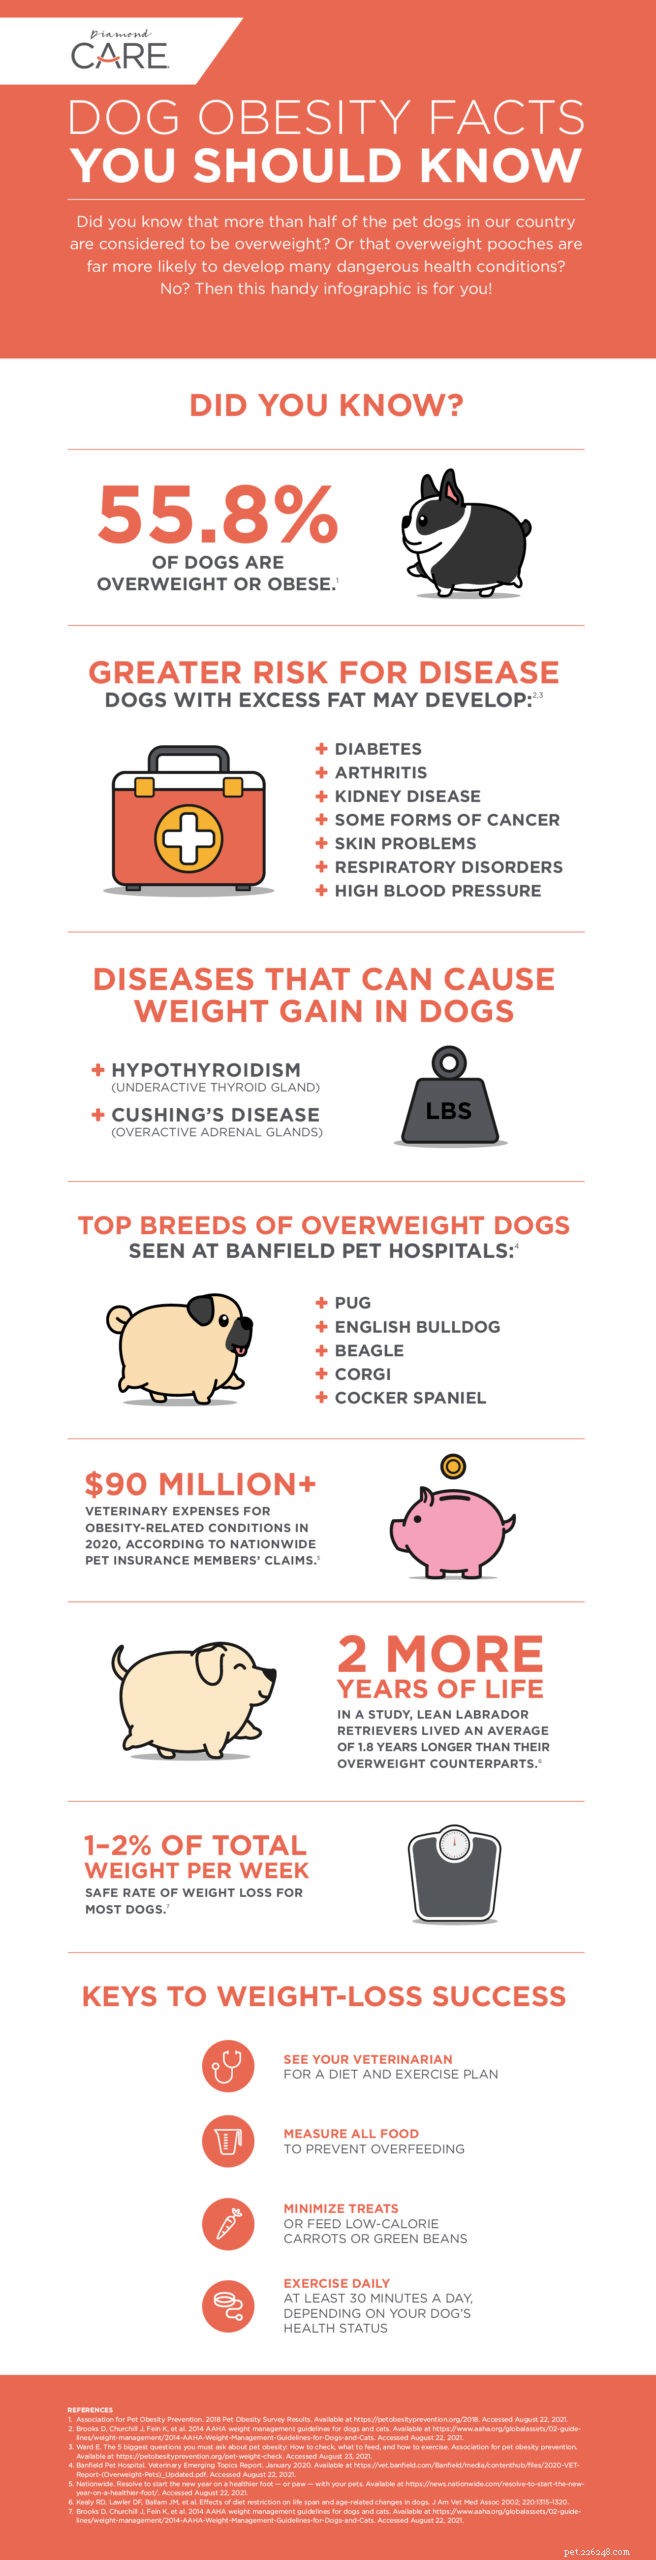 Divulgando alguns fatos sobre a obesidade canina